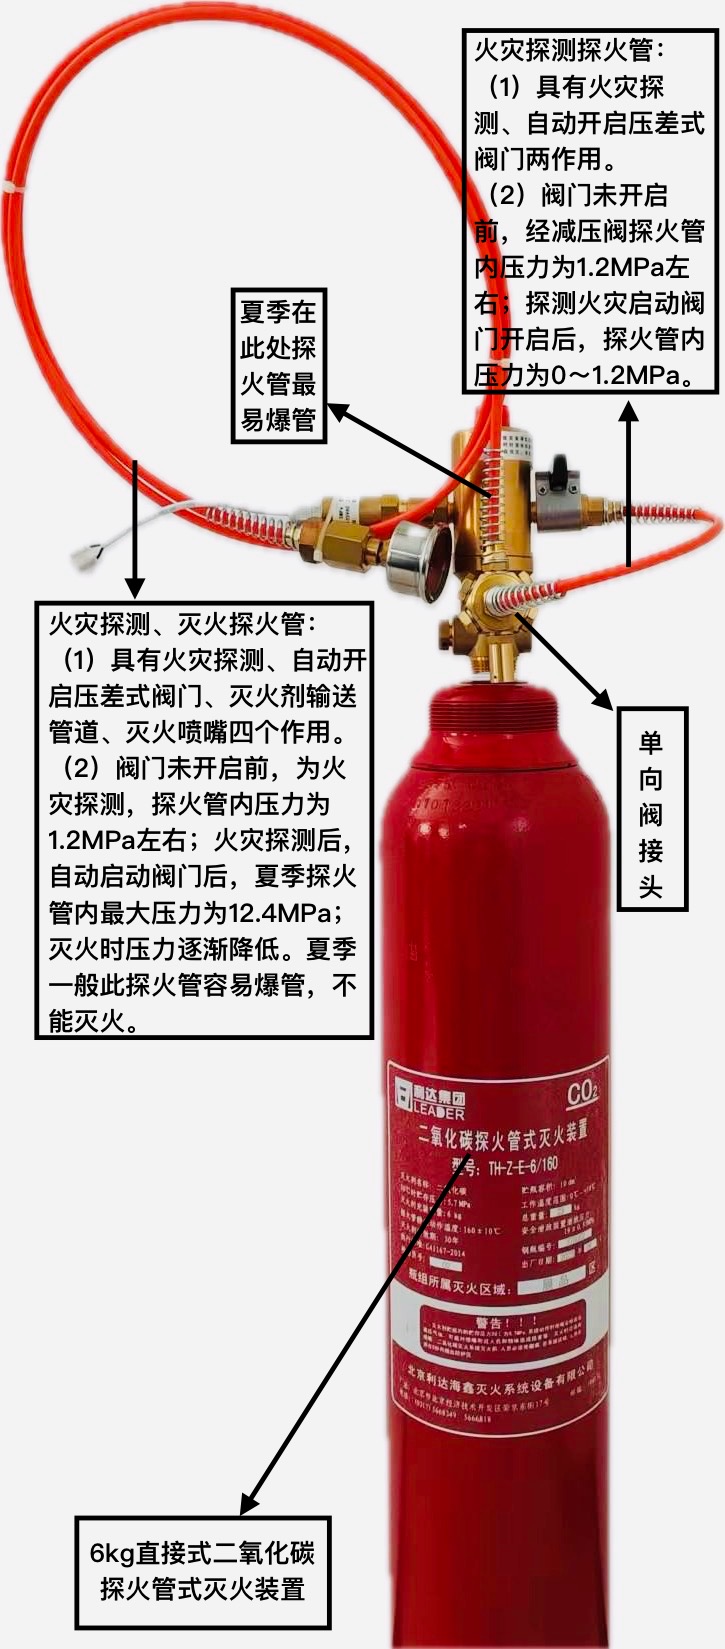 感温自启动灭火装置产品应停止生产销售应由探火管式灭火装置完全代替与两产品区别说明及当前存在的质量问题